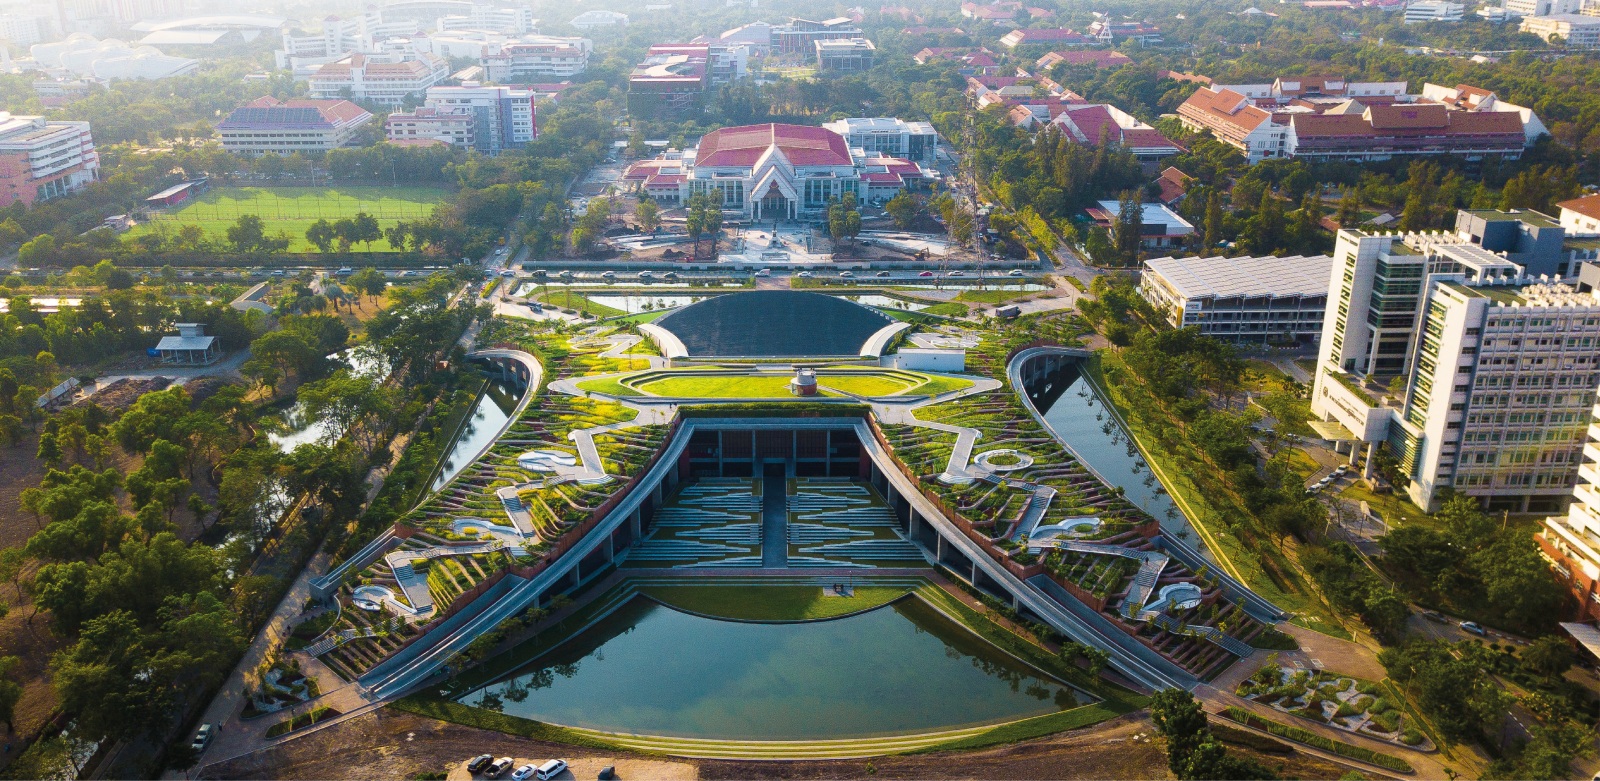 Thammasat University Urban Rooftop Farm (TURF) Featured Image